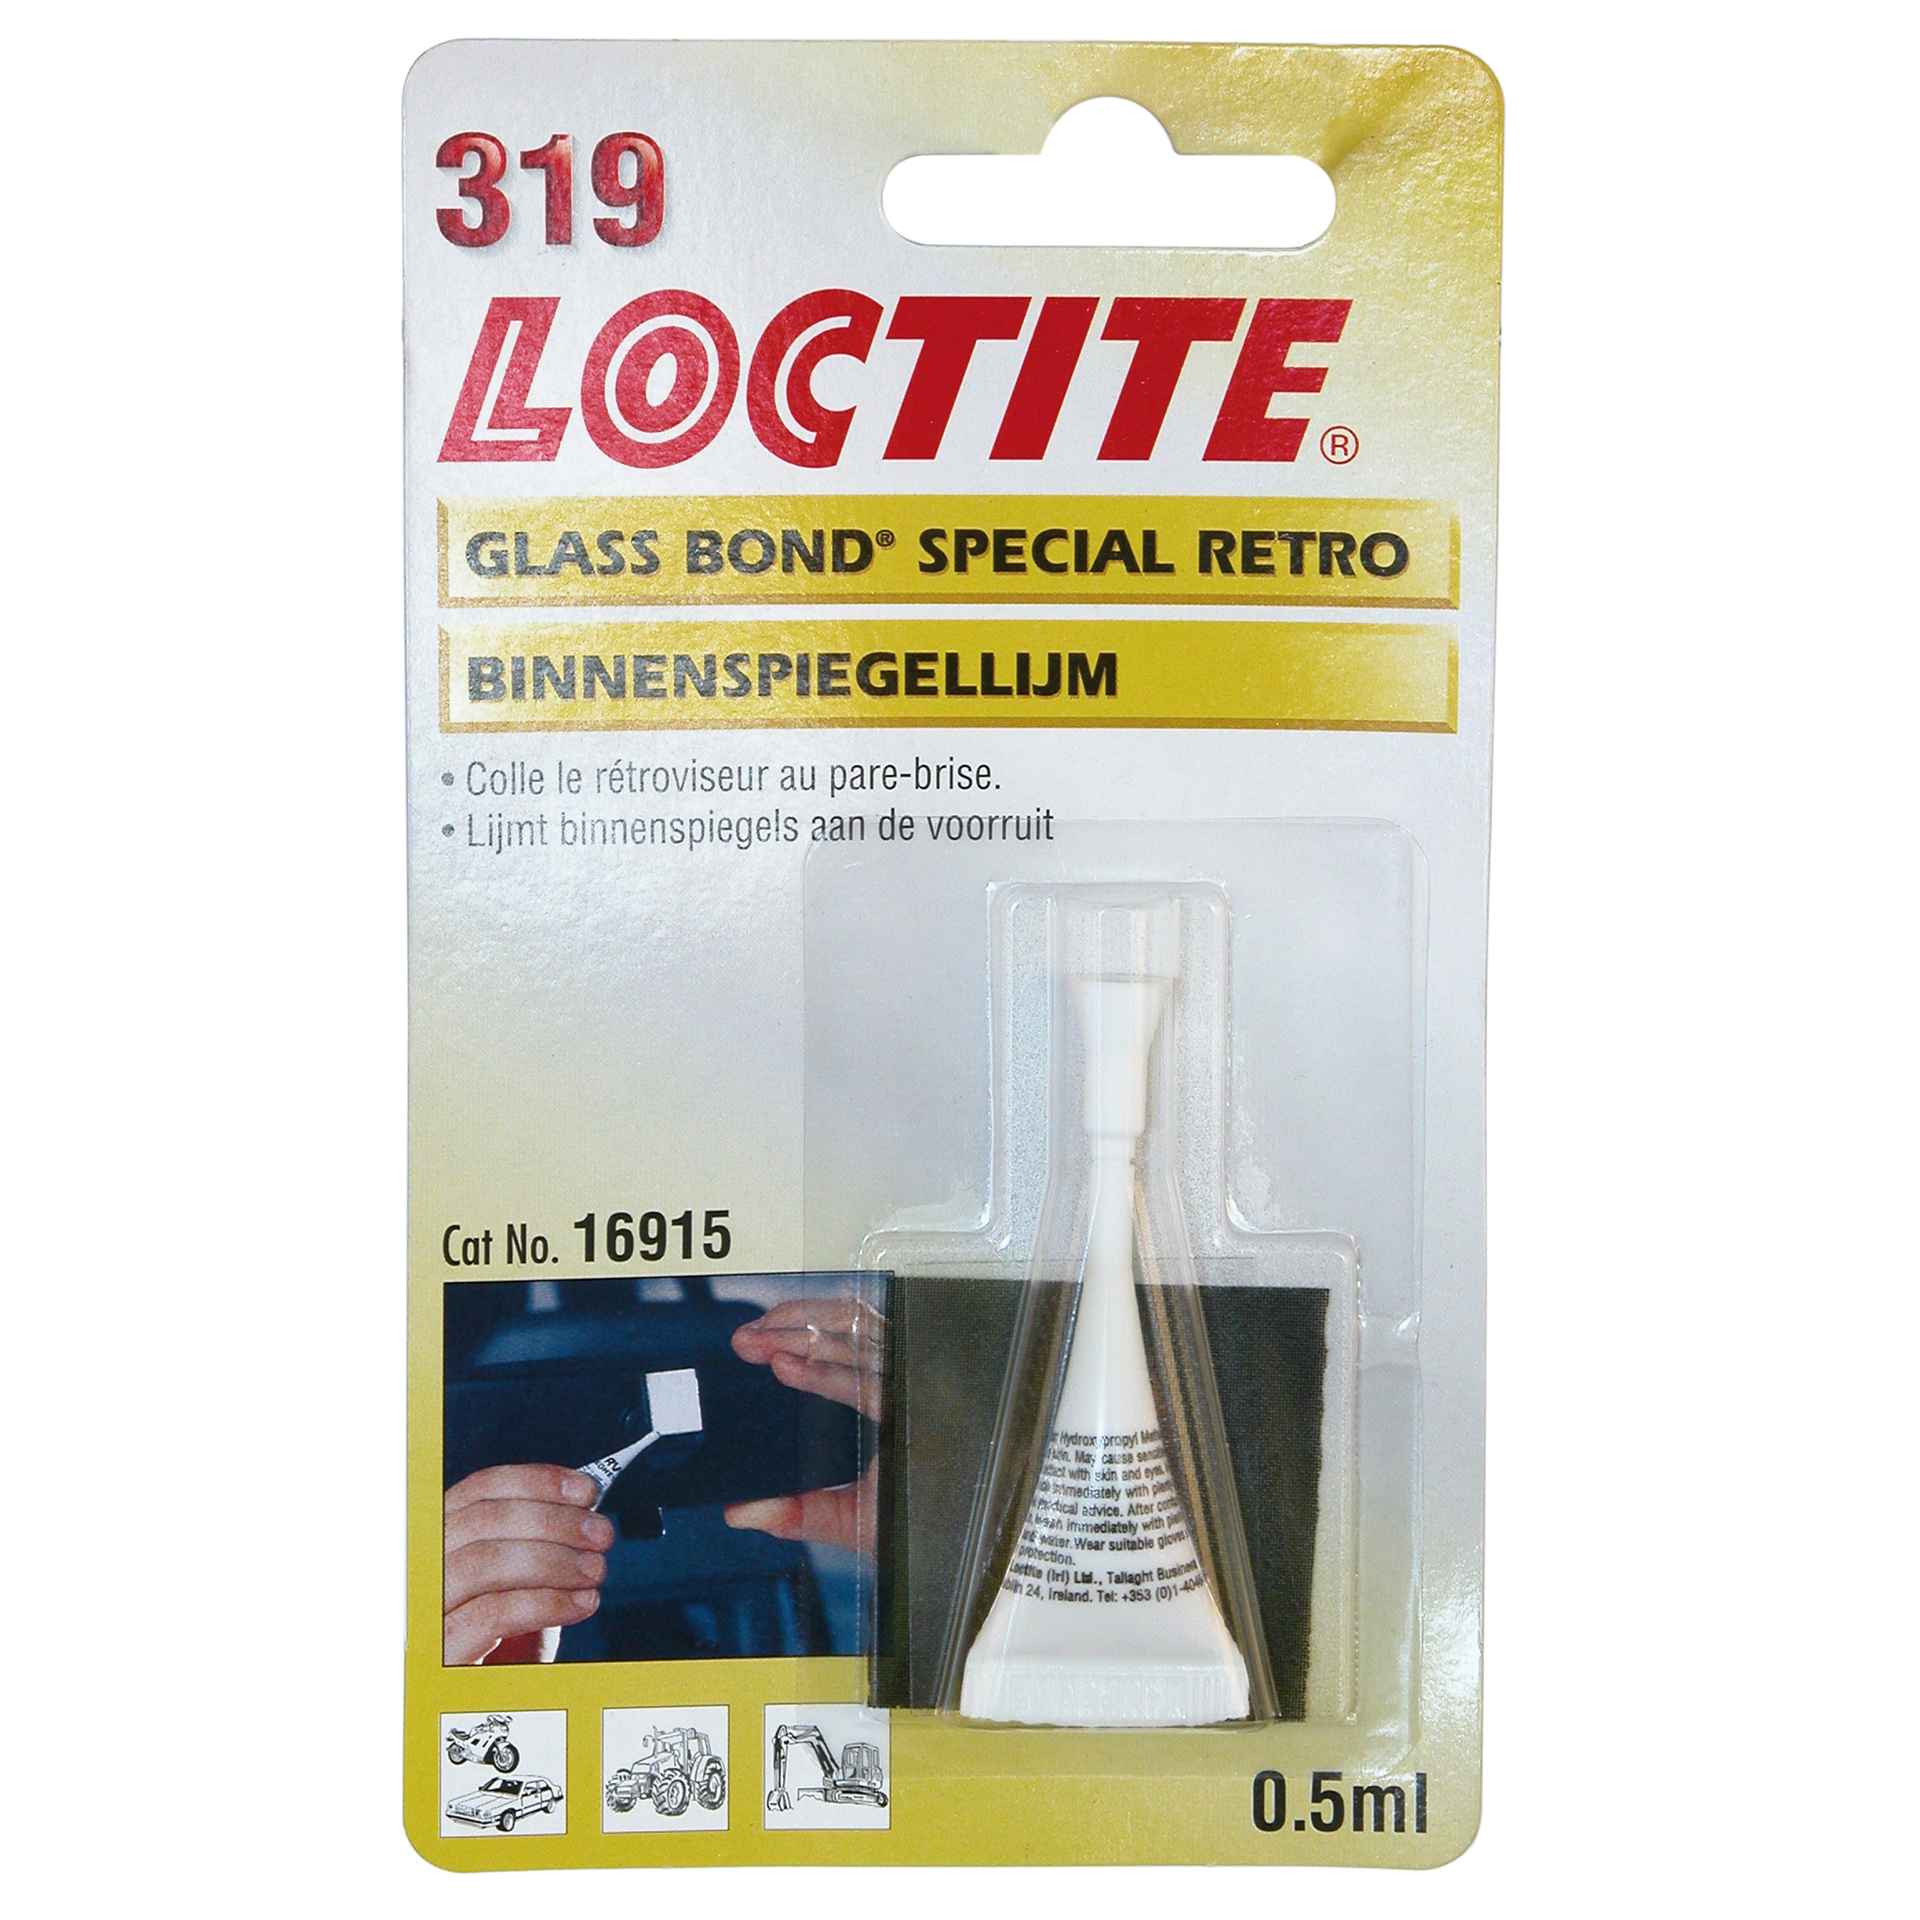 Loctite Loctite 319 Binnenspiegellijm 0.5ml 1831734